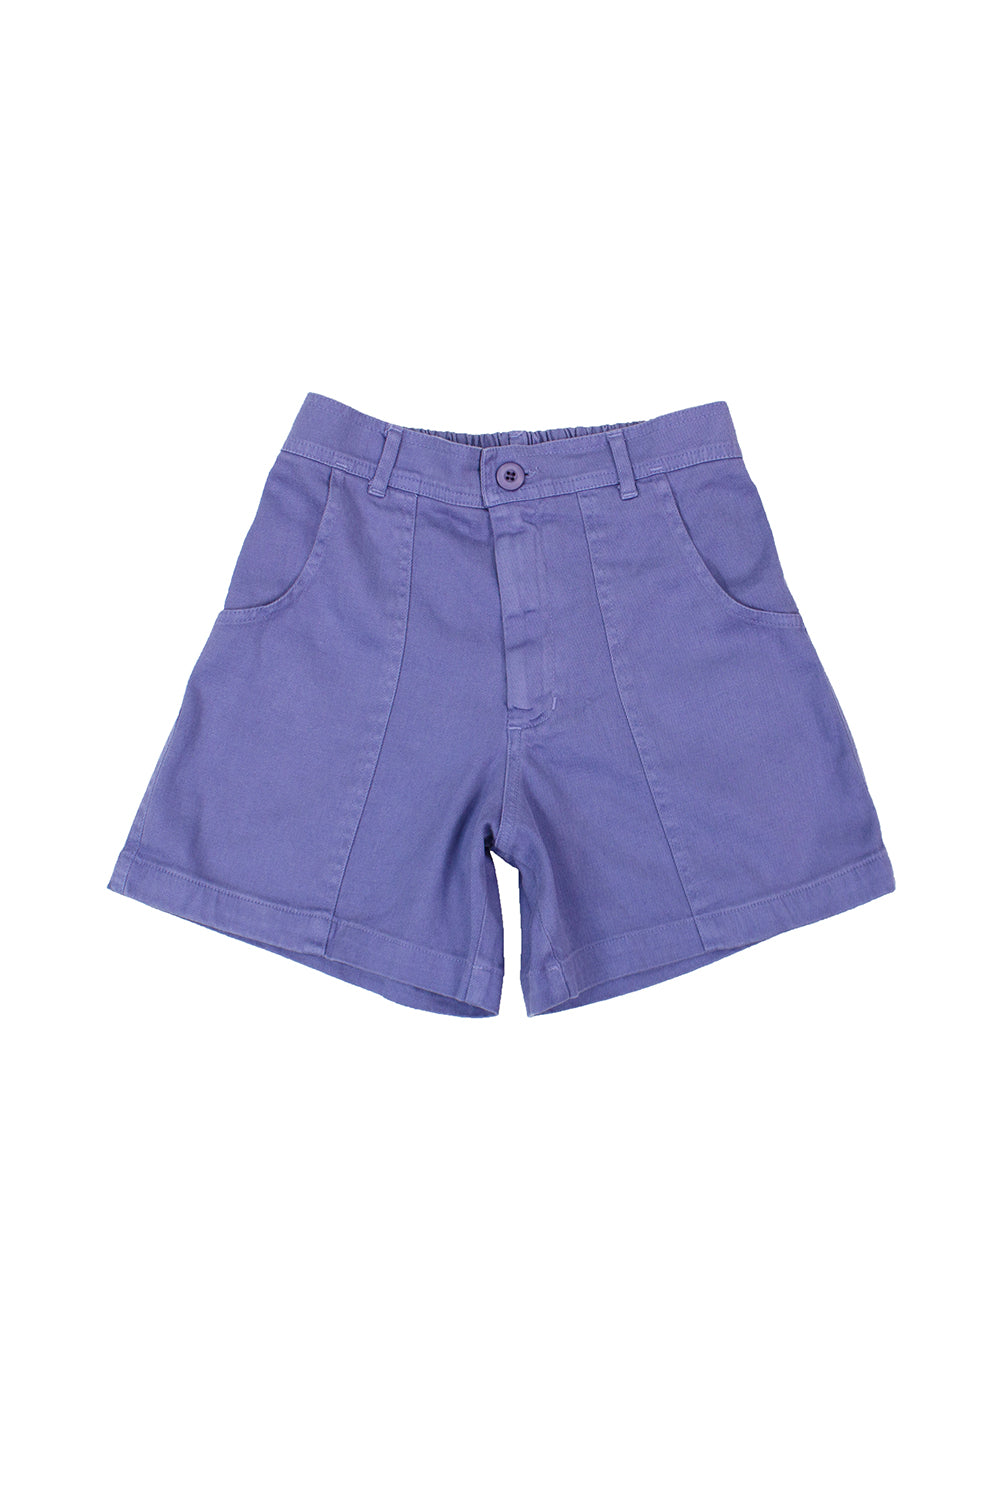 Venice Short - Sale Colors | Jungmaven Hemp Clothing & Accessories / Color: Lavender Violet